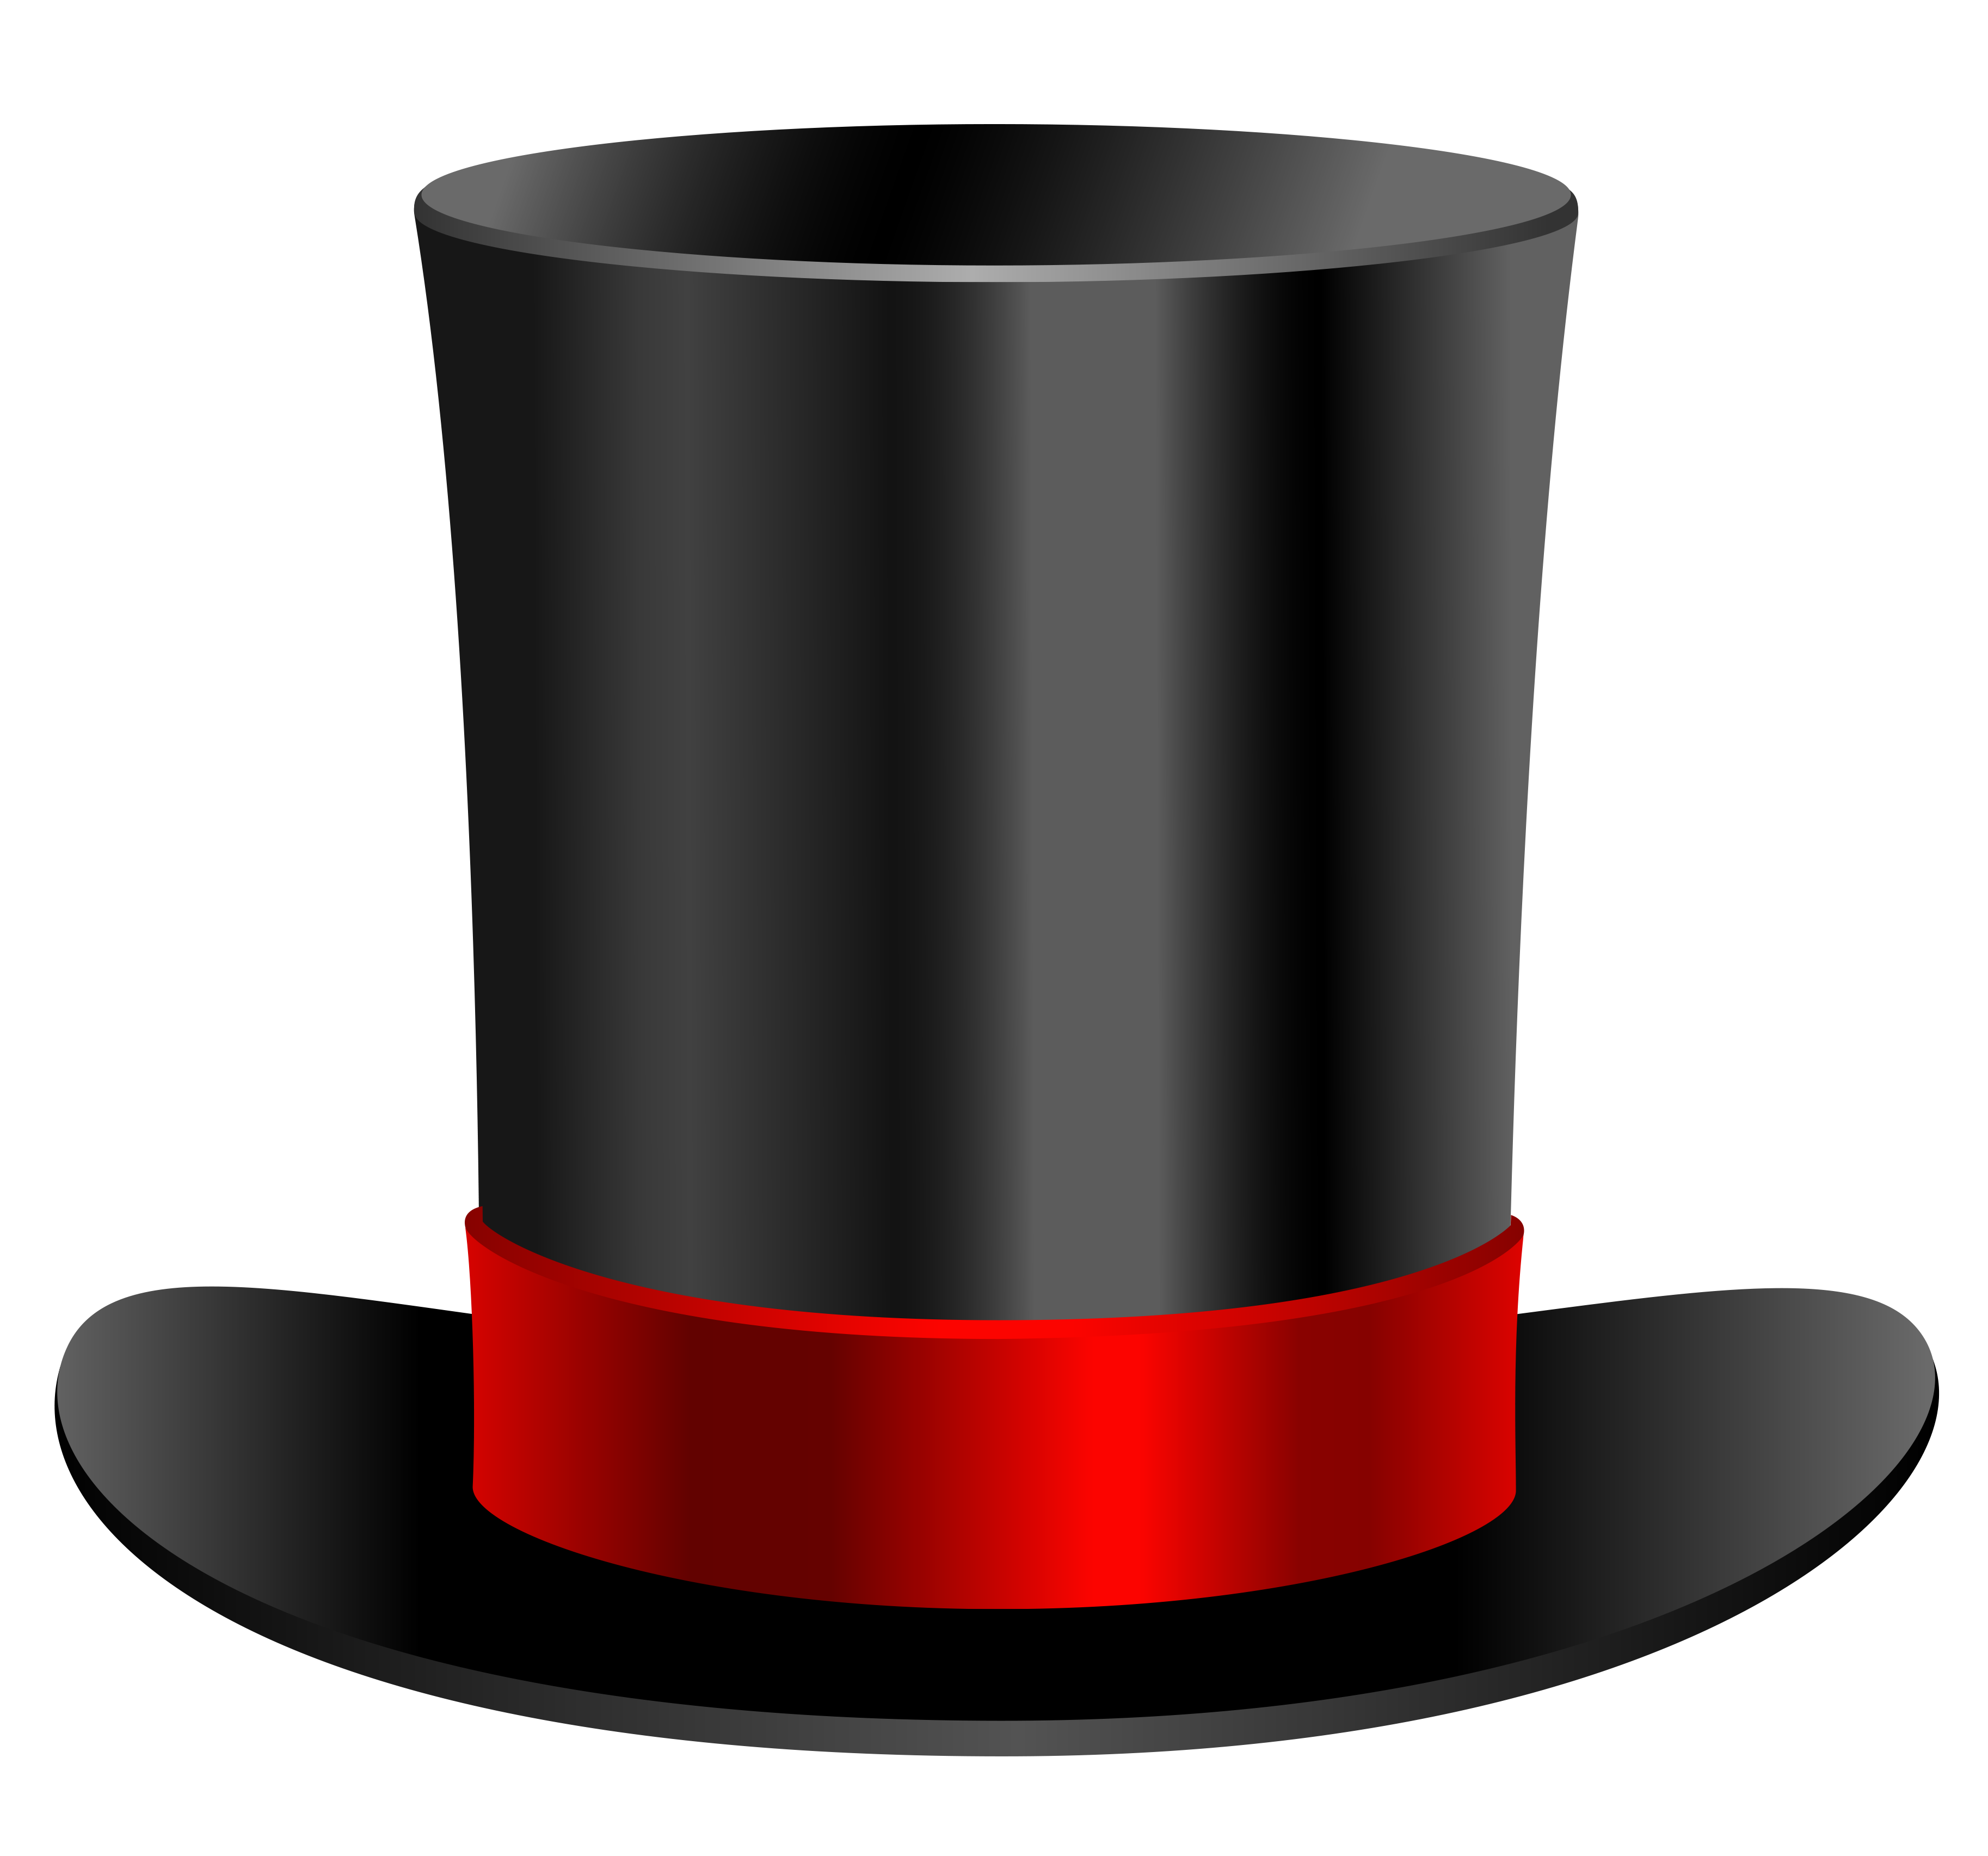 Hat Clip Art - Hat Images